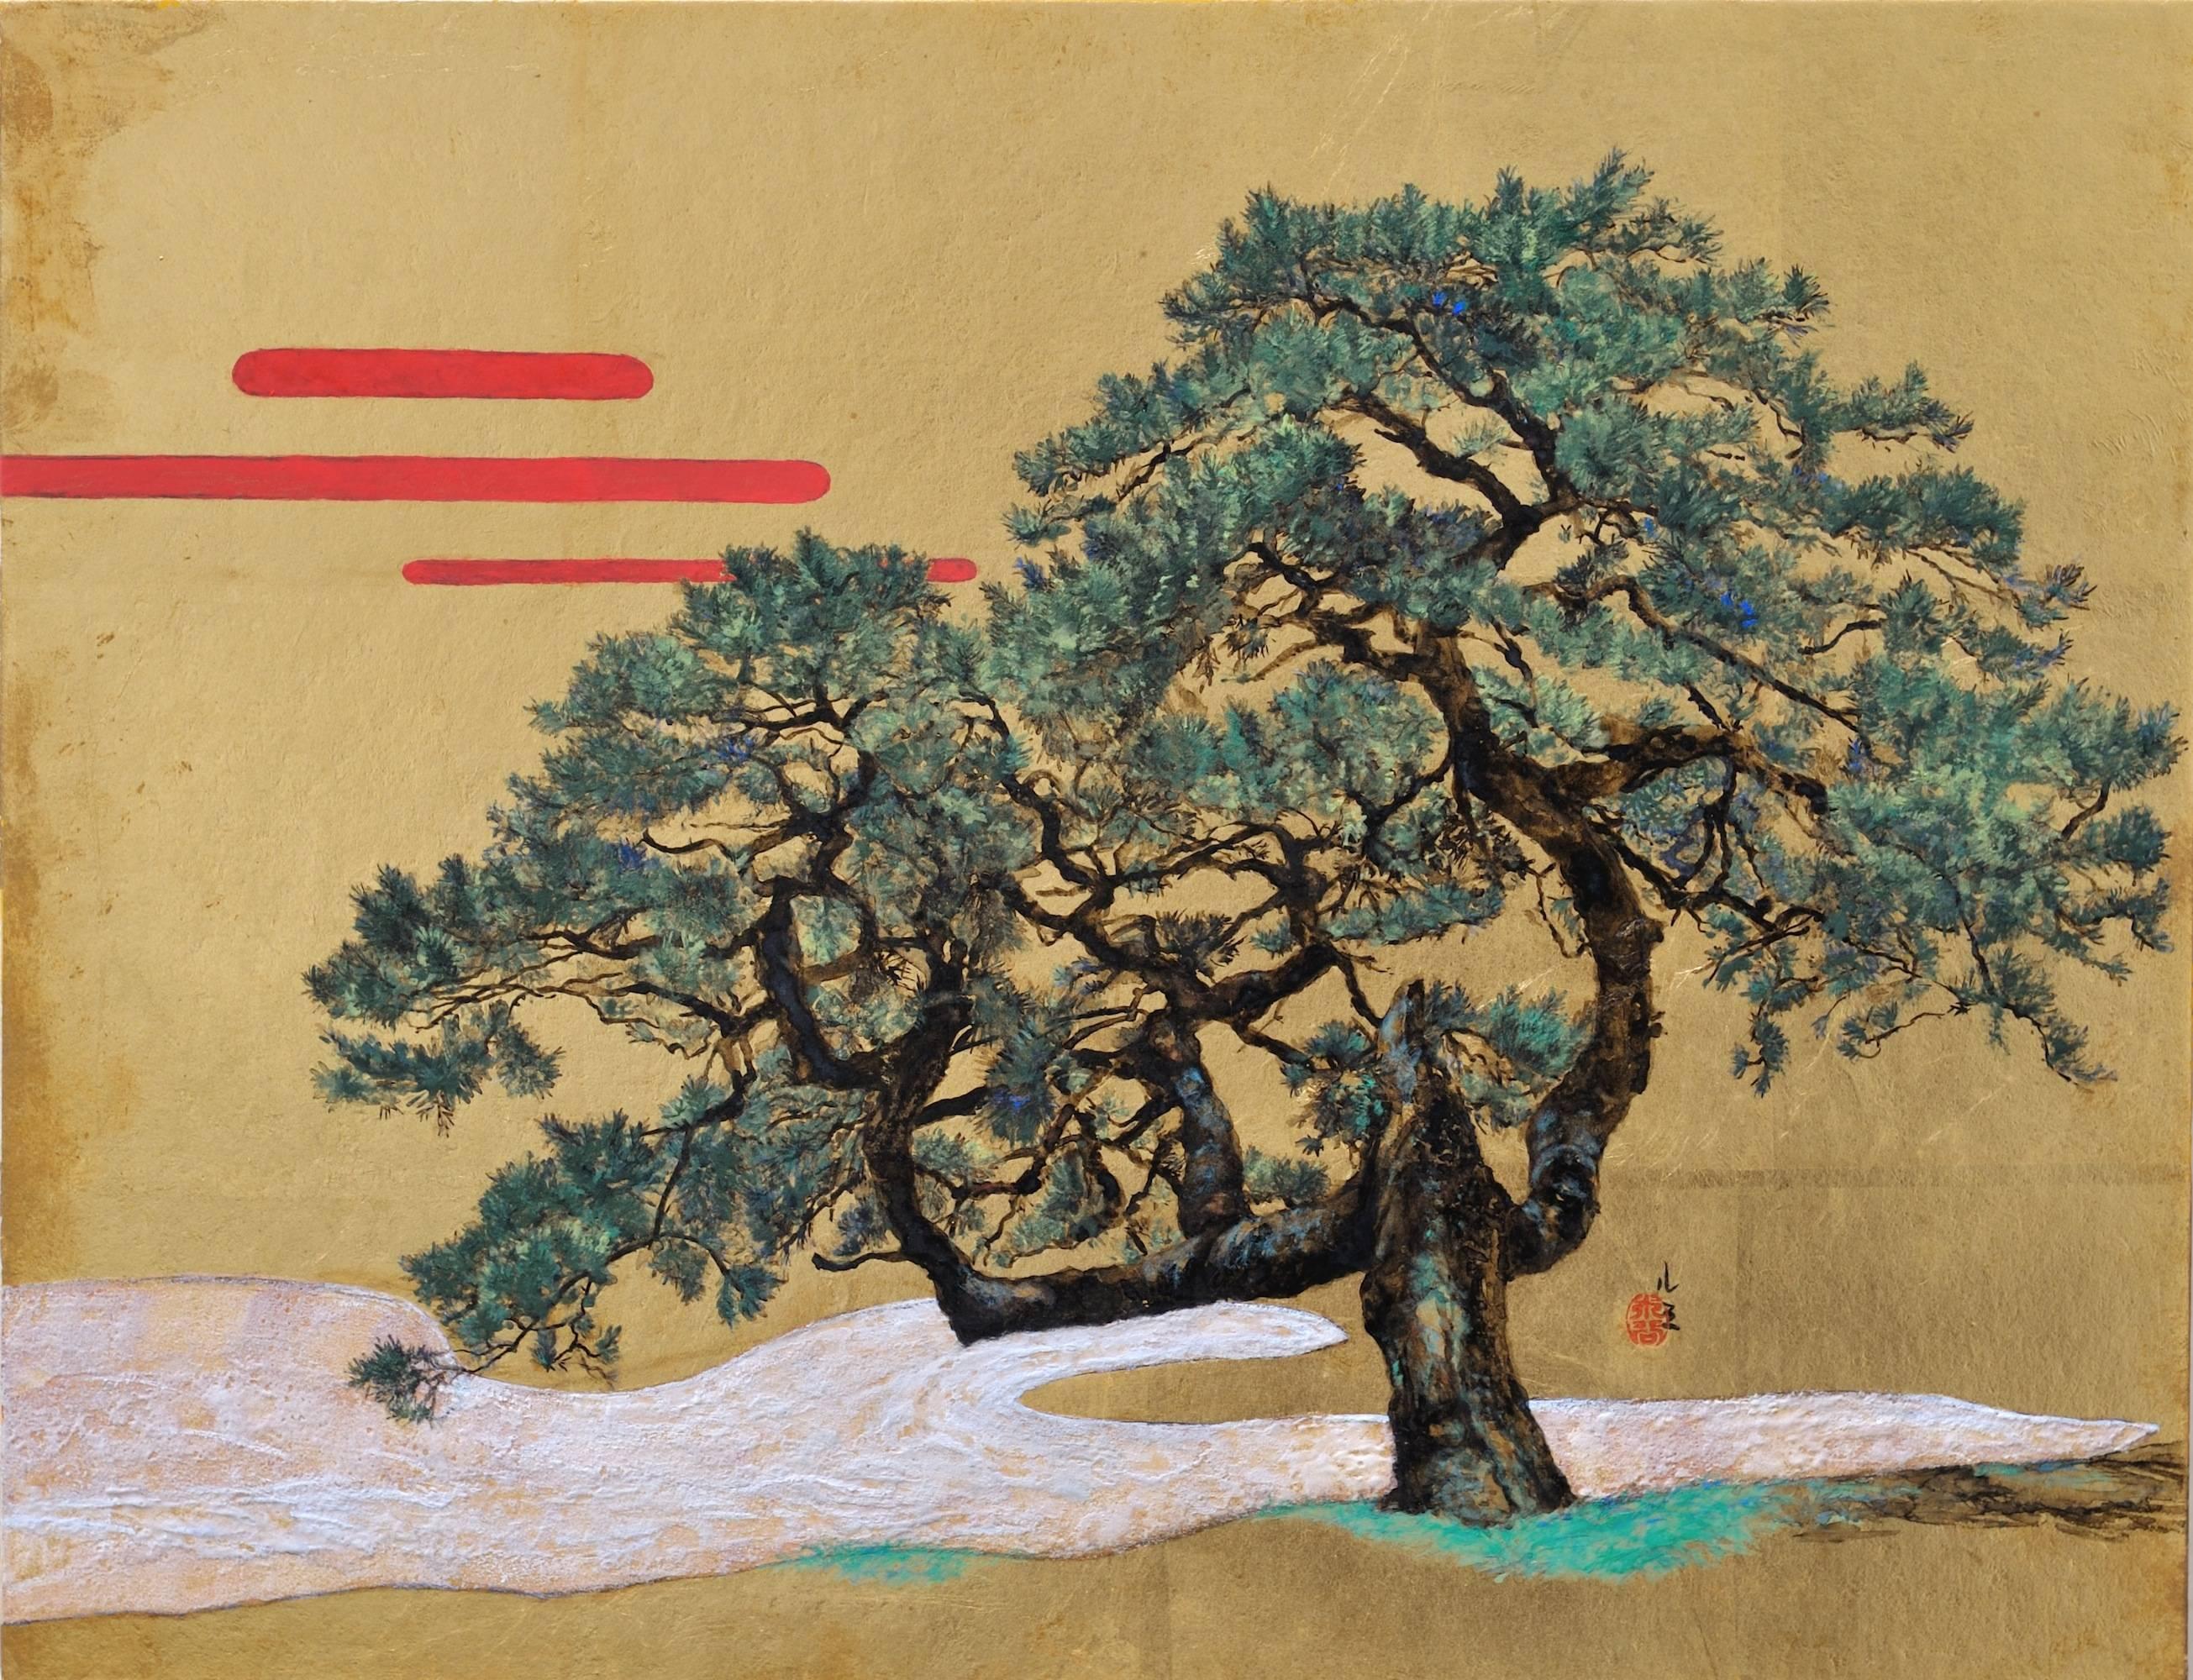 Memory ist ein einzigartiges Gemälde des zeitgenössischen Künstlers Lumi Mizutani. Das Gemälde ist mit Tusche und japanischen Pigmenten auf einer mit Kupferblättern bedeckten Tafel gemalt und hat die Maße 31,8 × 40,9 cm (12,5 × 16,1 in). 
Das